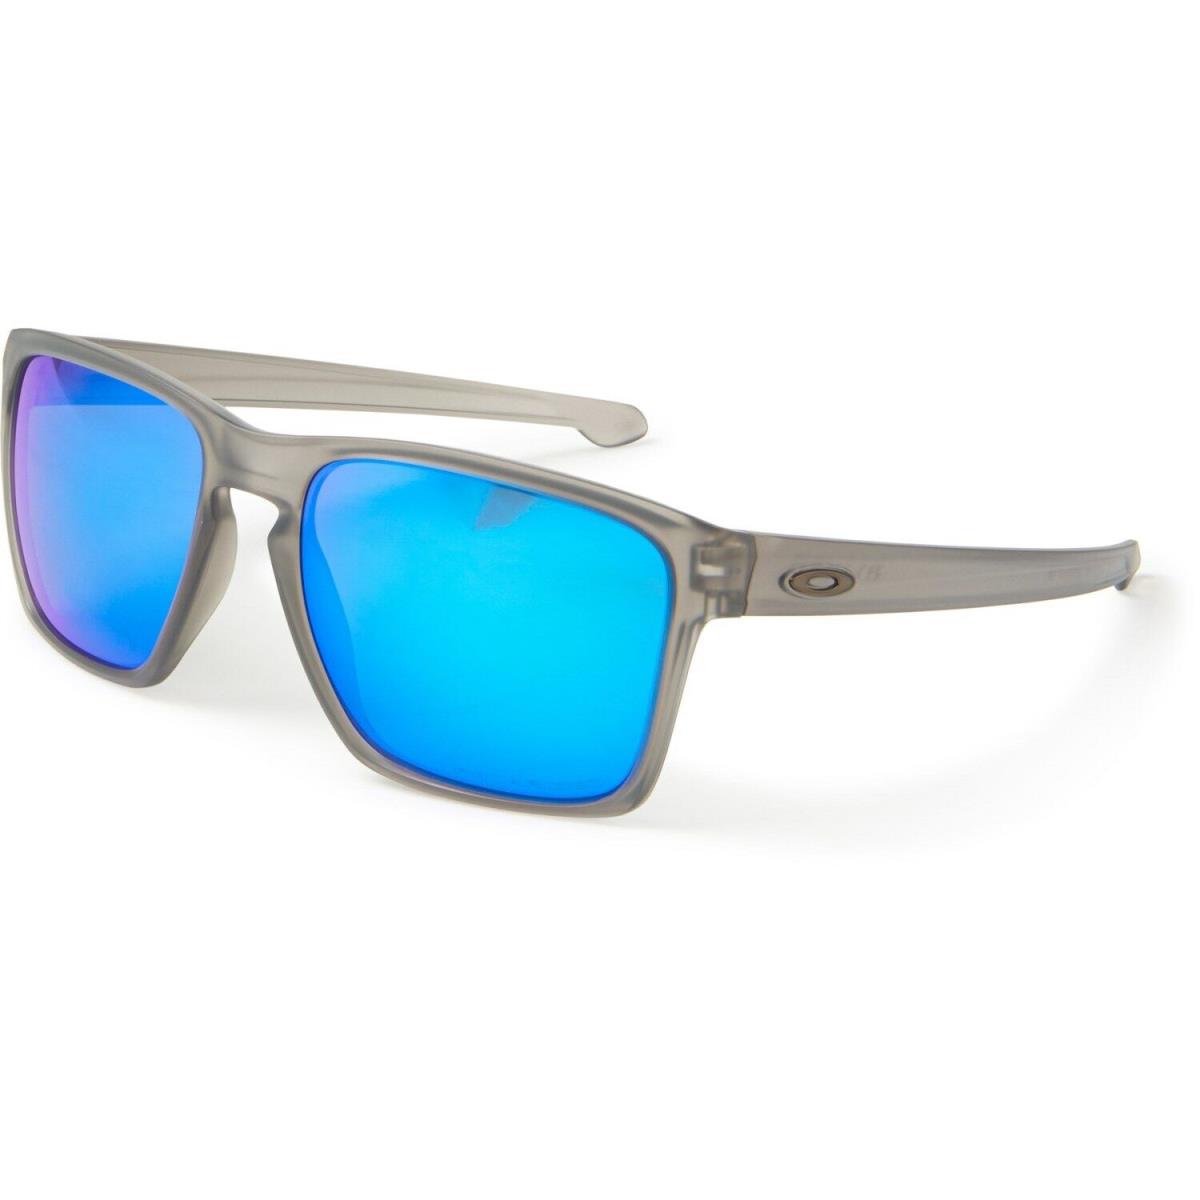 Oakley sunglasses Sliver - Multicolor Frame 1